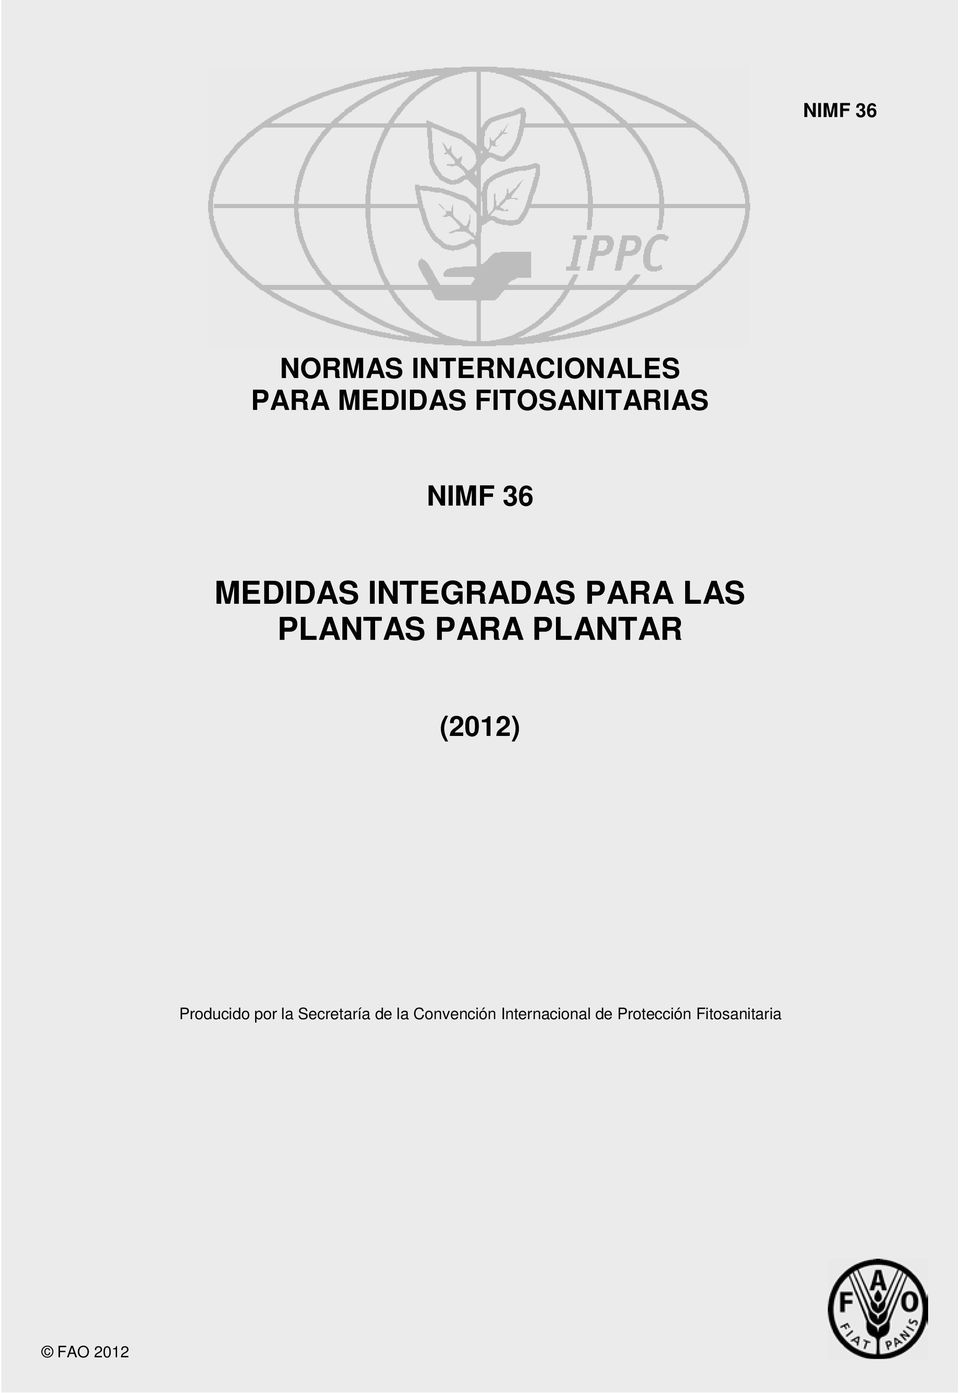 PLANTAS PARA PLANTAR (2012) Producido por la